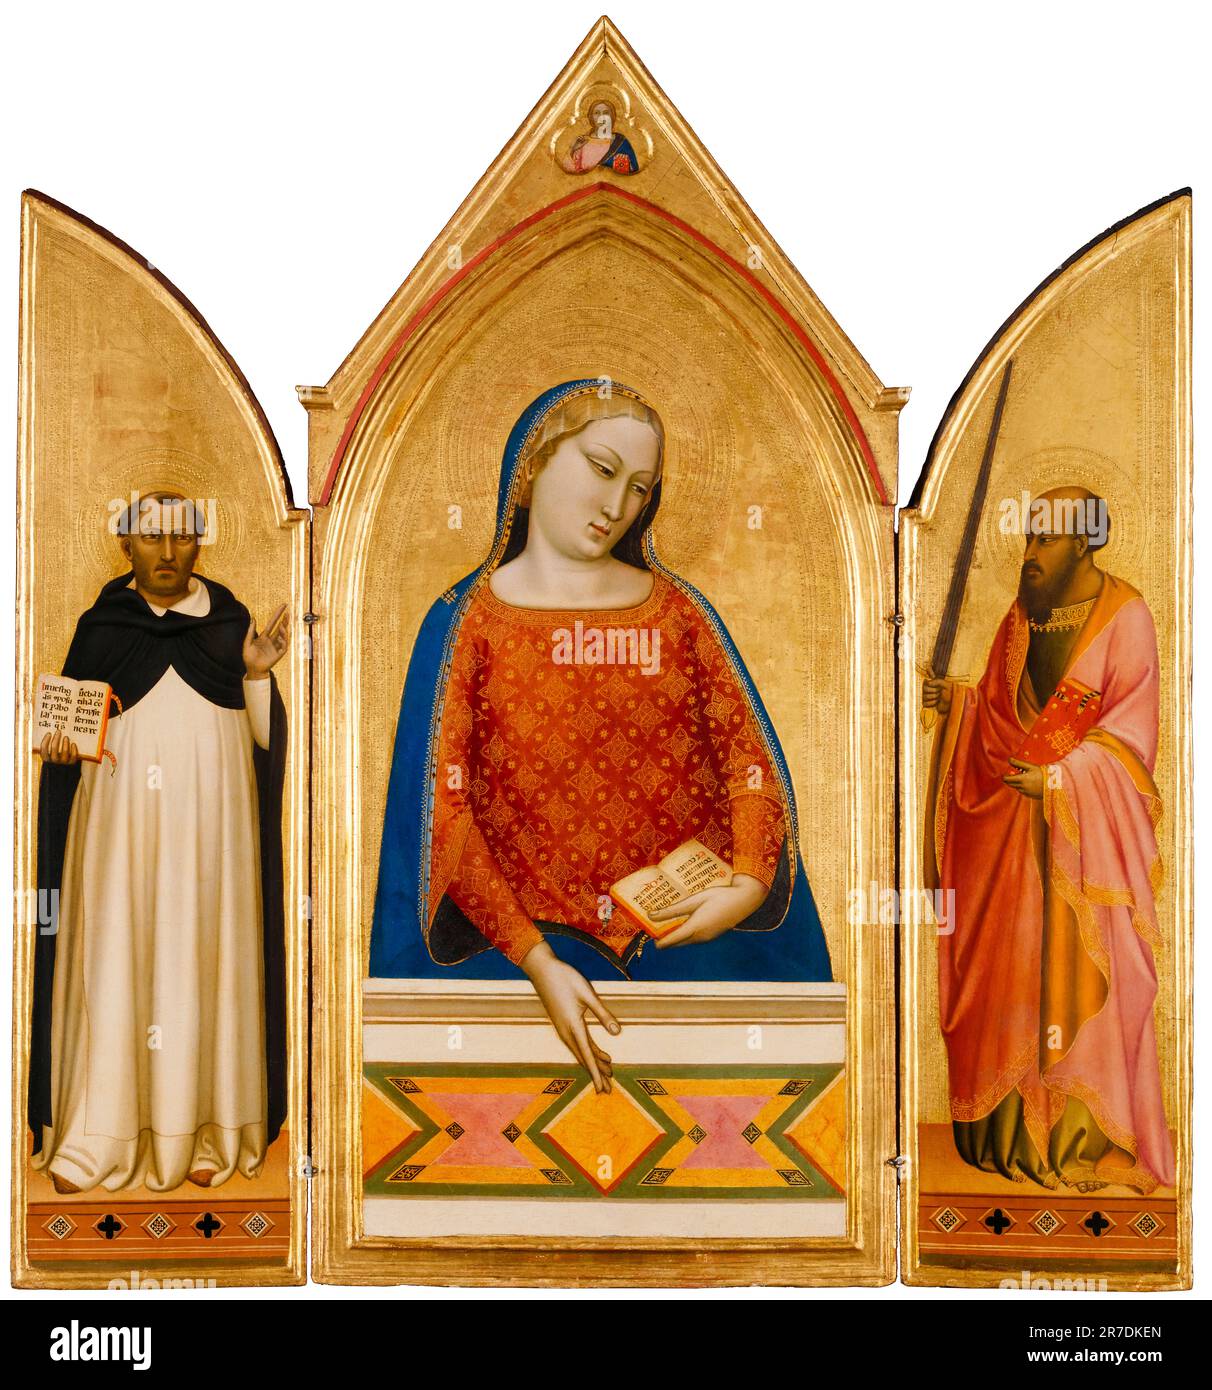 Bernardo Daddi, la Vergine Maria con i Santi Tommaso d'Aquino e Paolo, dipinto a tempera e foglia d'oro su tavola, intorno al 1335 Foto Stock